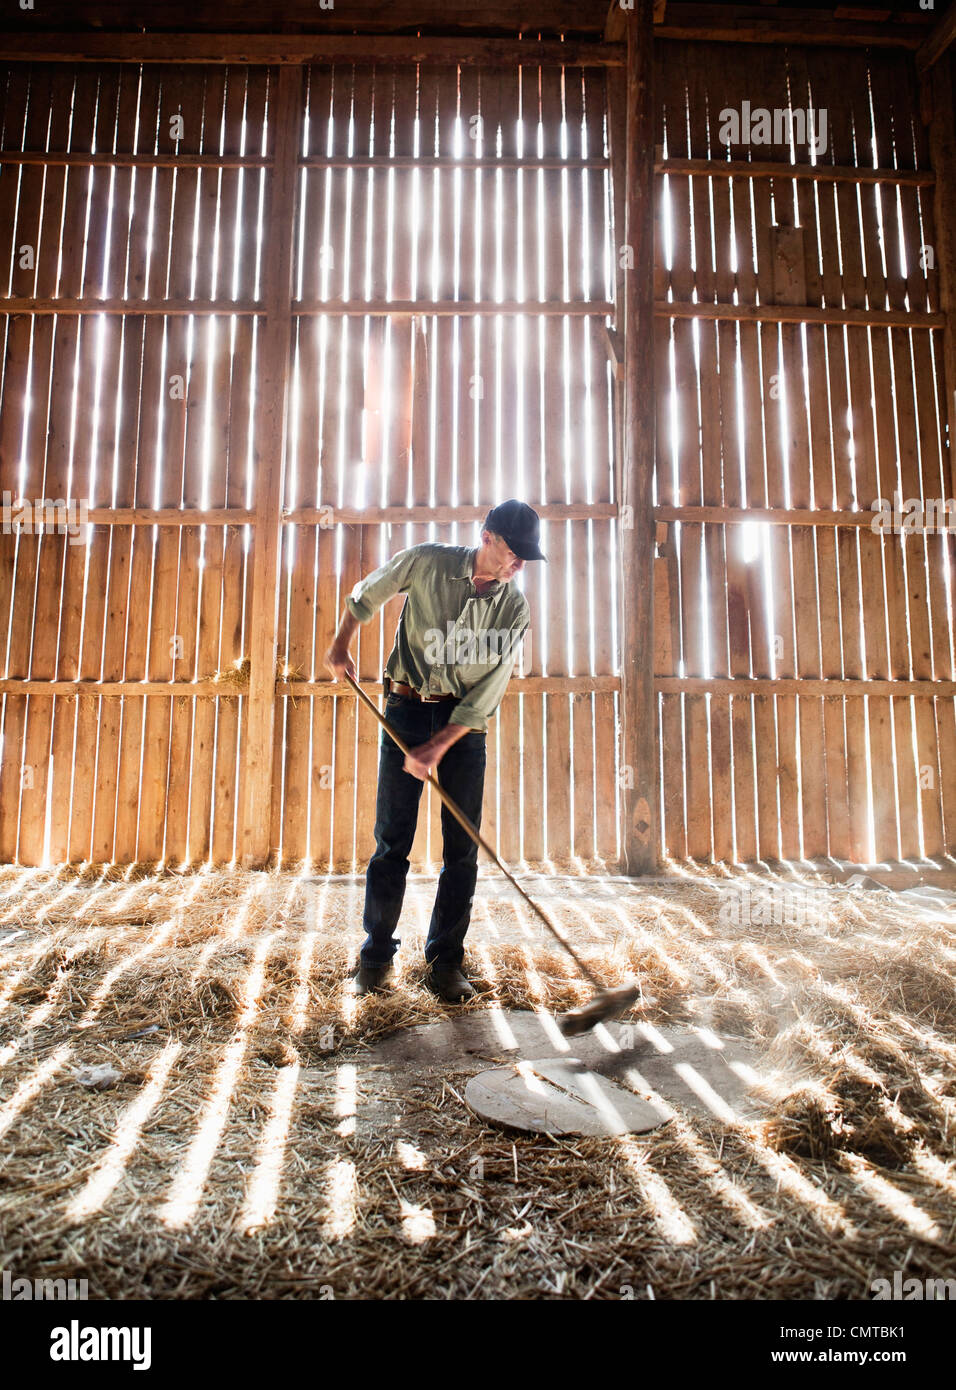 Farmer sweeping in barn Stock Photo